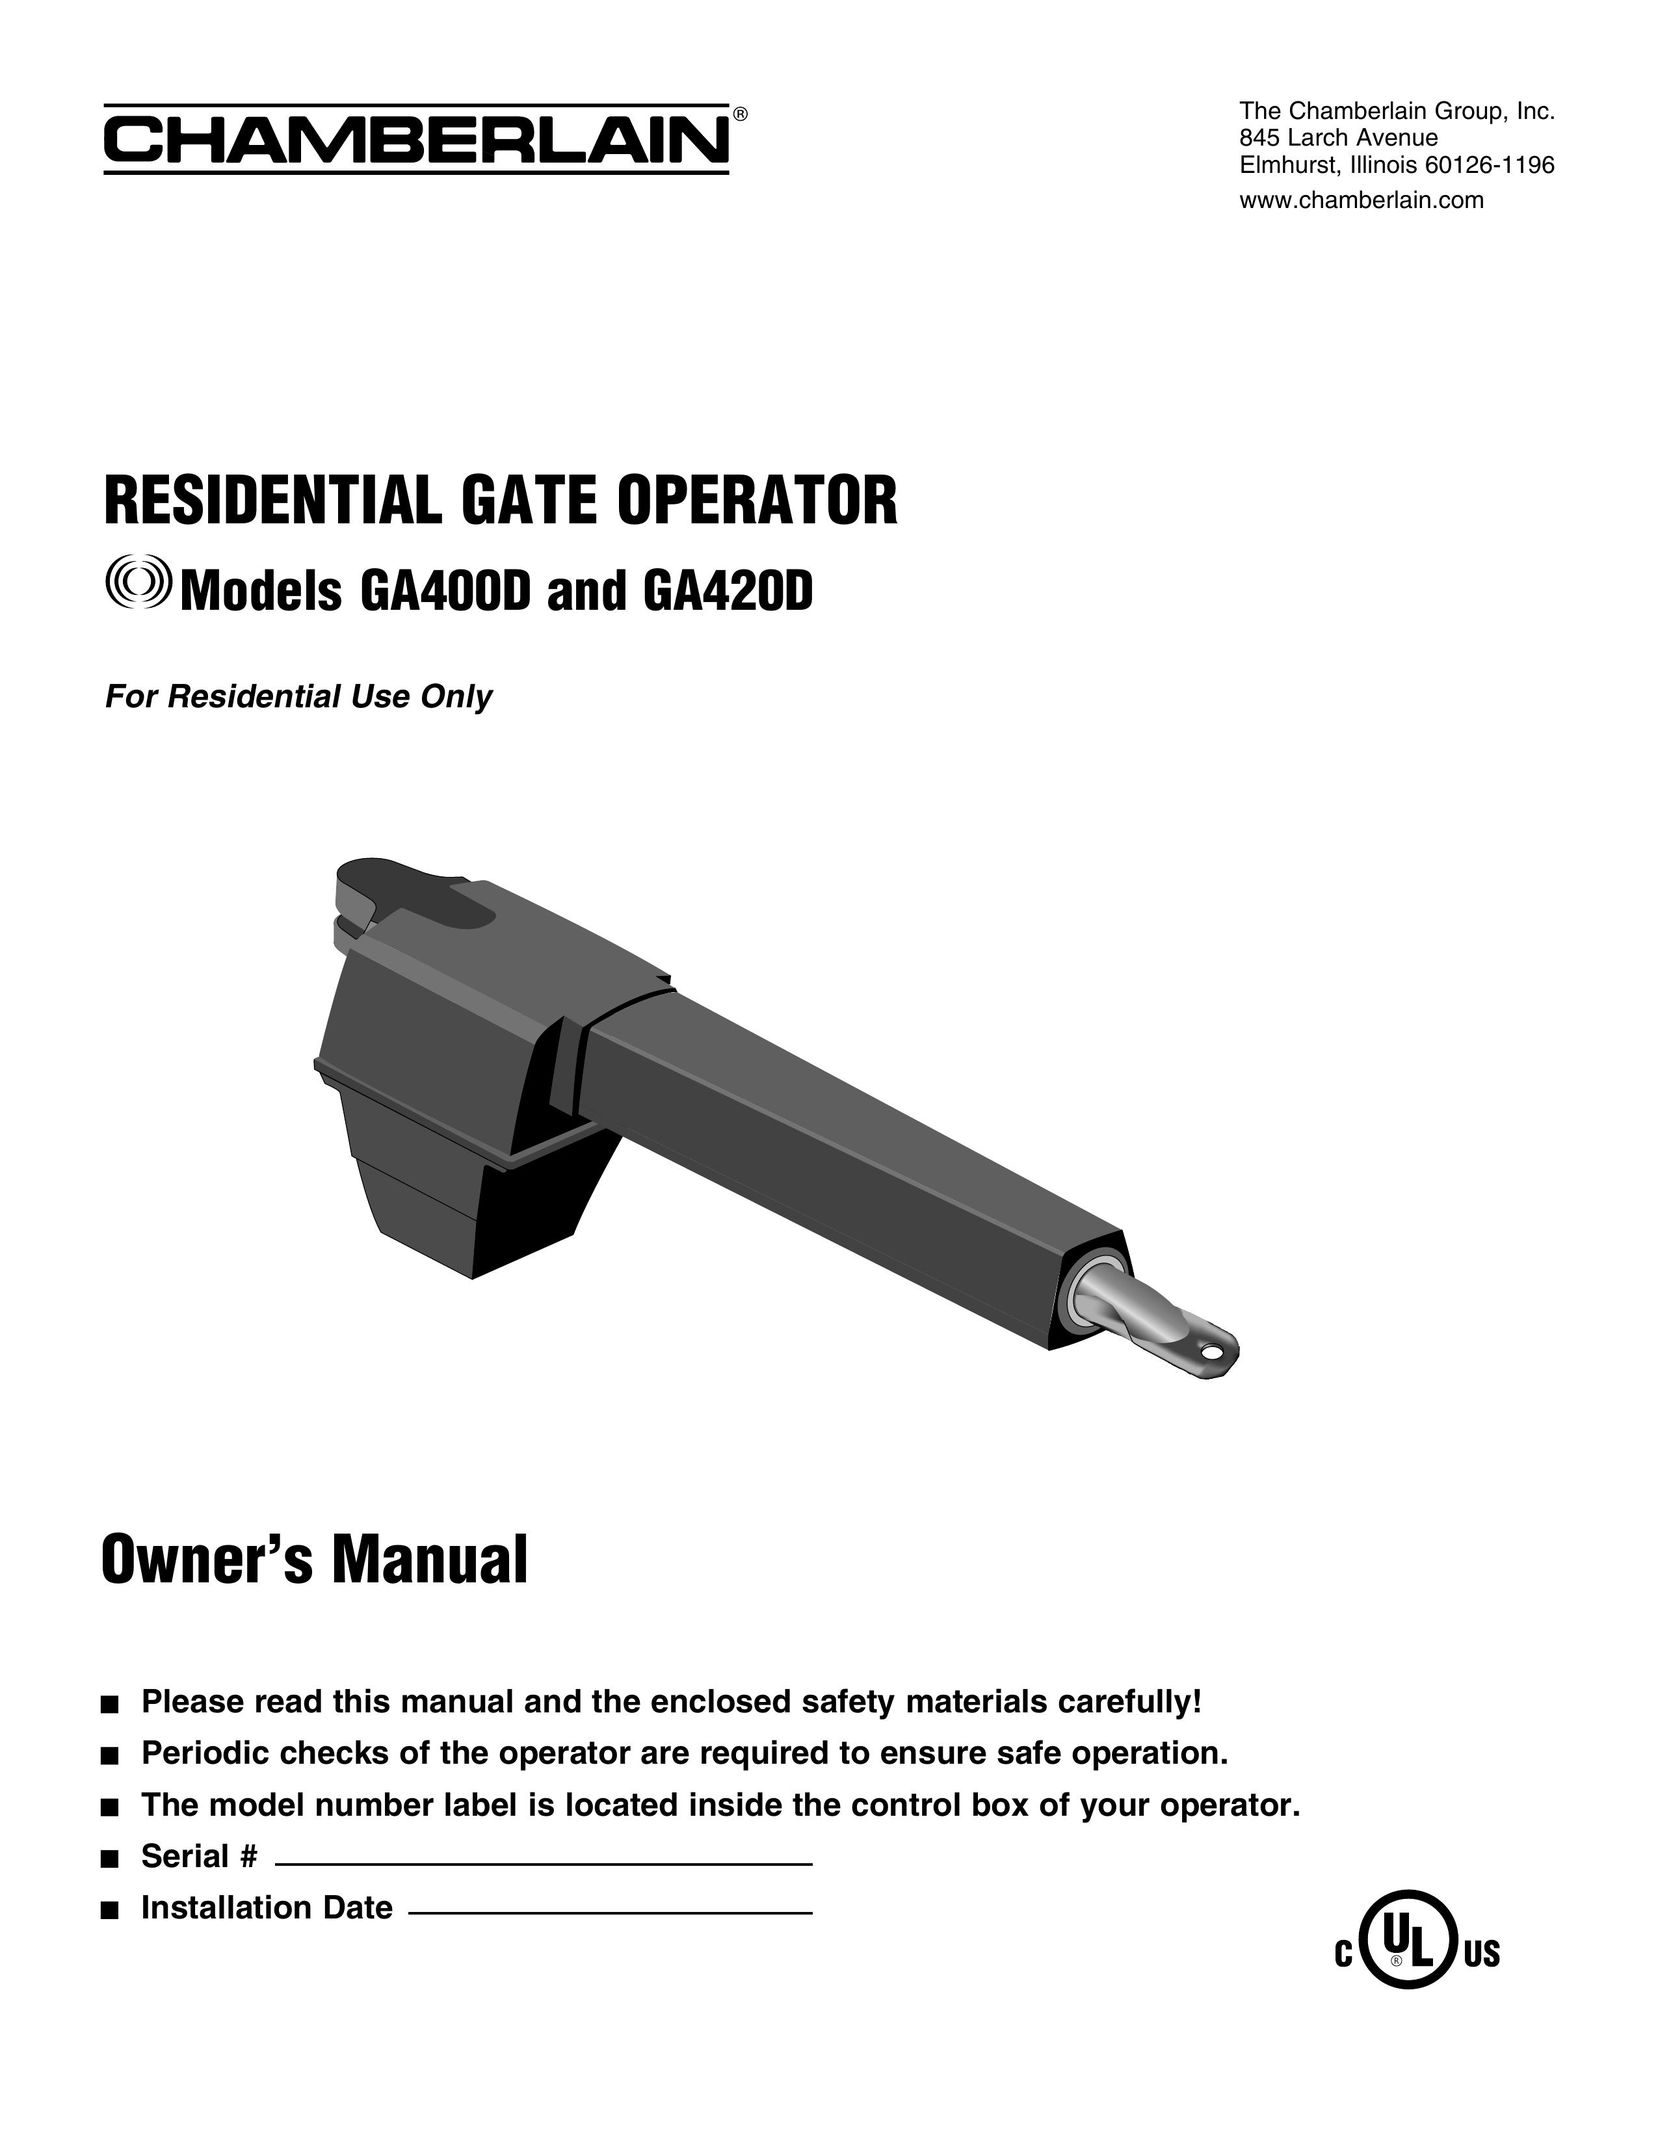 Chamberlain GA400D Safety Gate User Manual